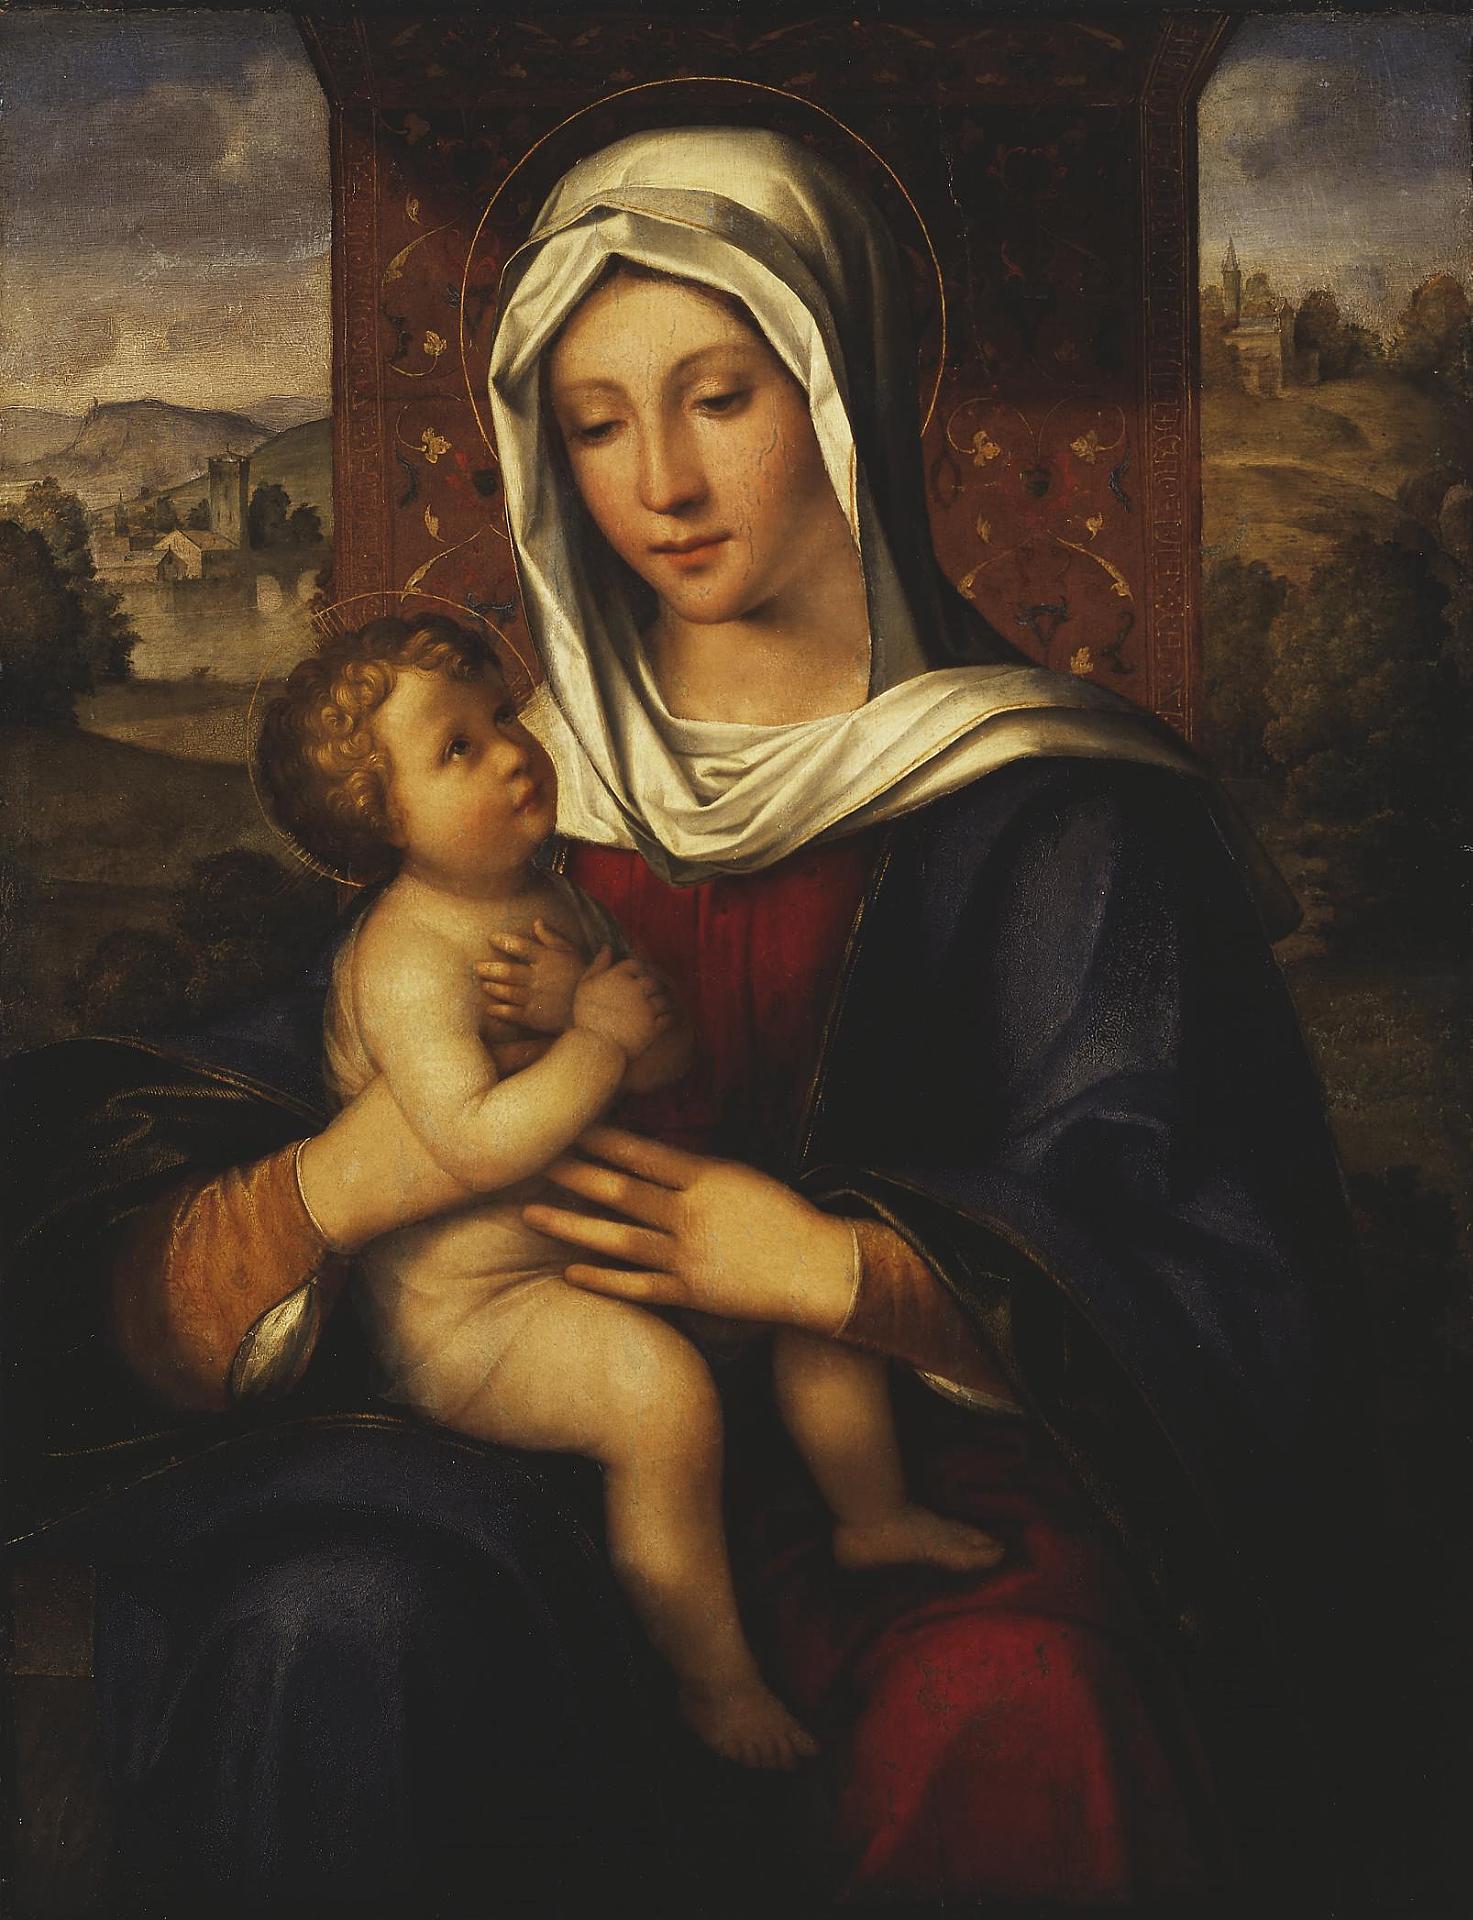 Бокаччо Боккаччино. "Мадонна с Младенцем". 1518-1520. Эрмитаж, Санкт-Петербург.